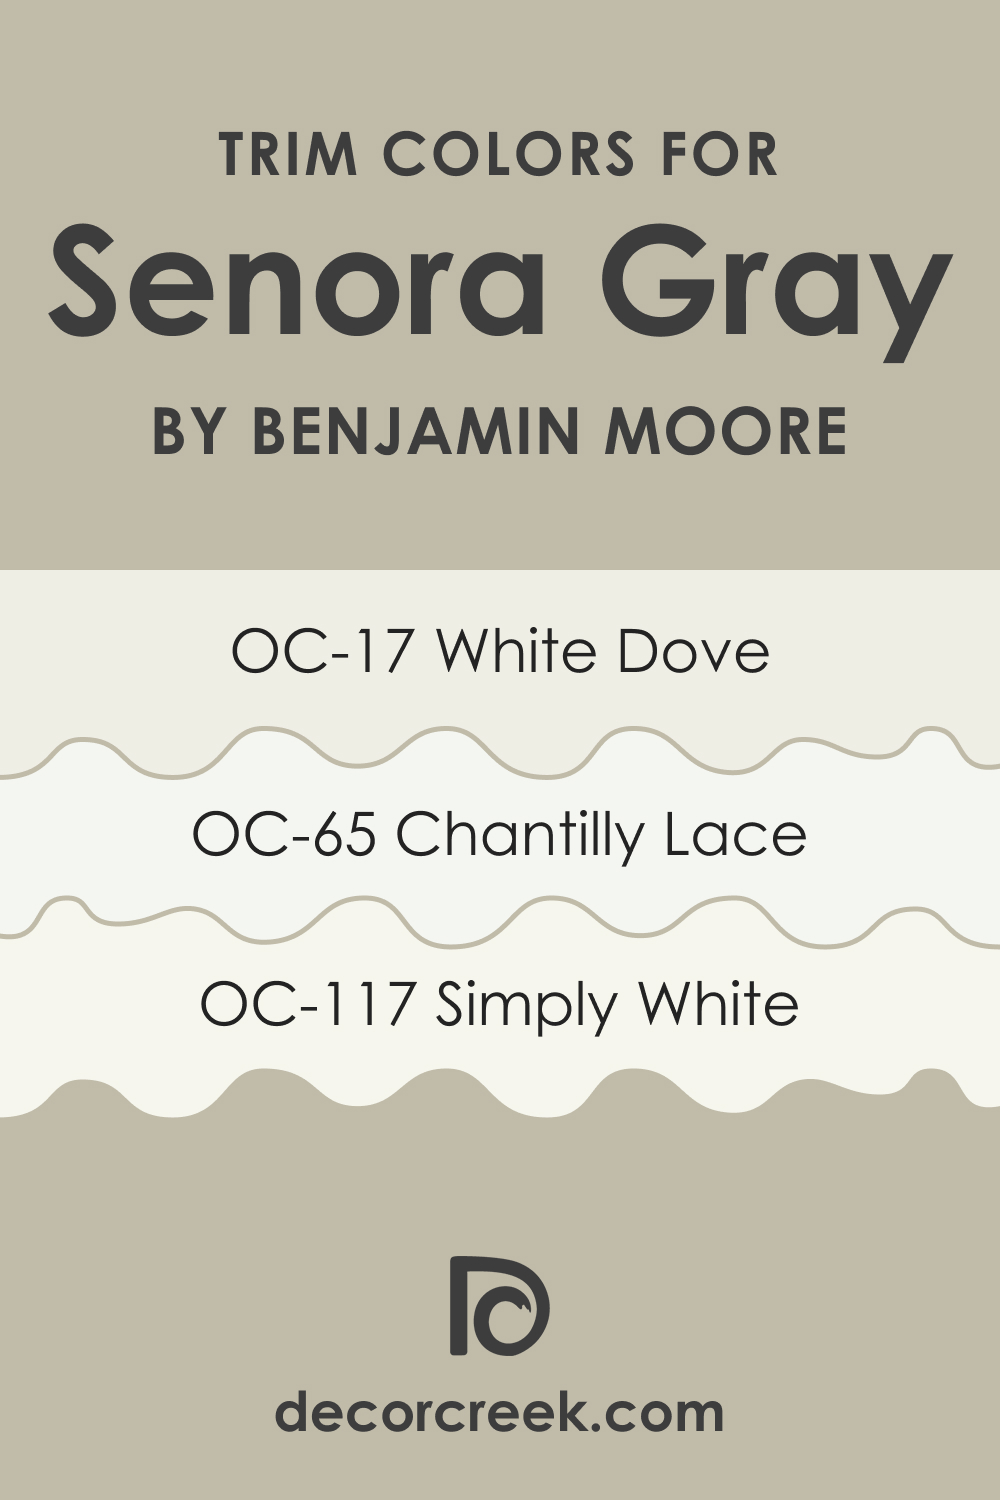 Trim Colors of Senora Gray 1530